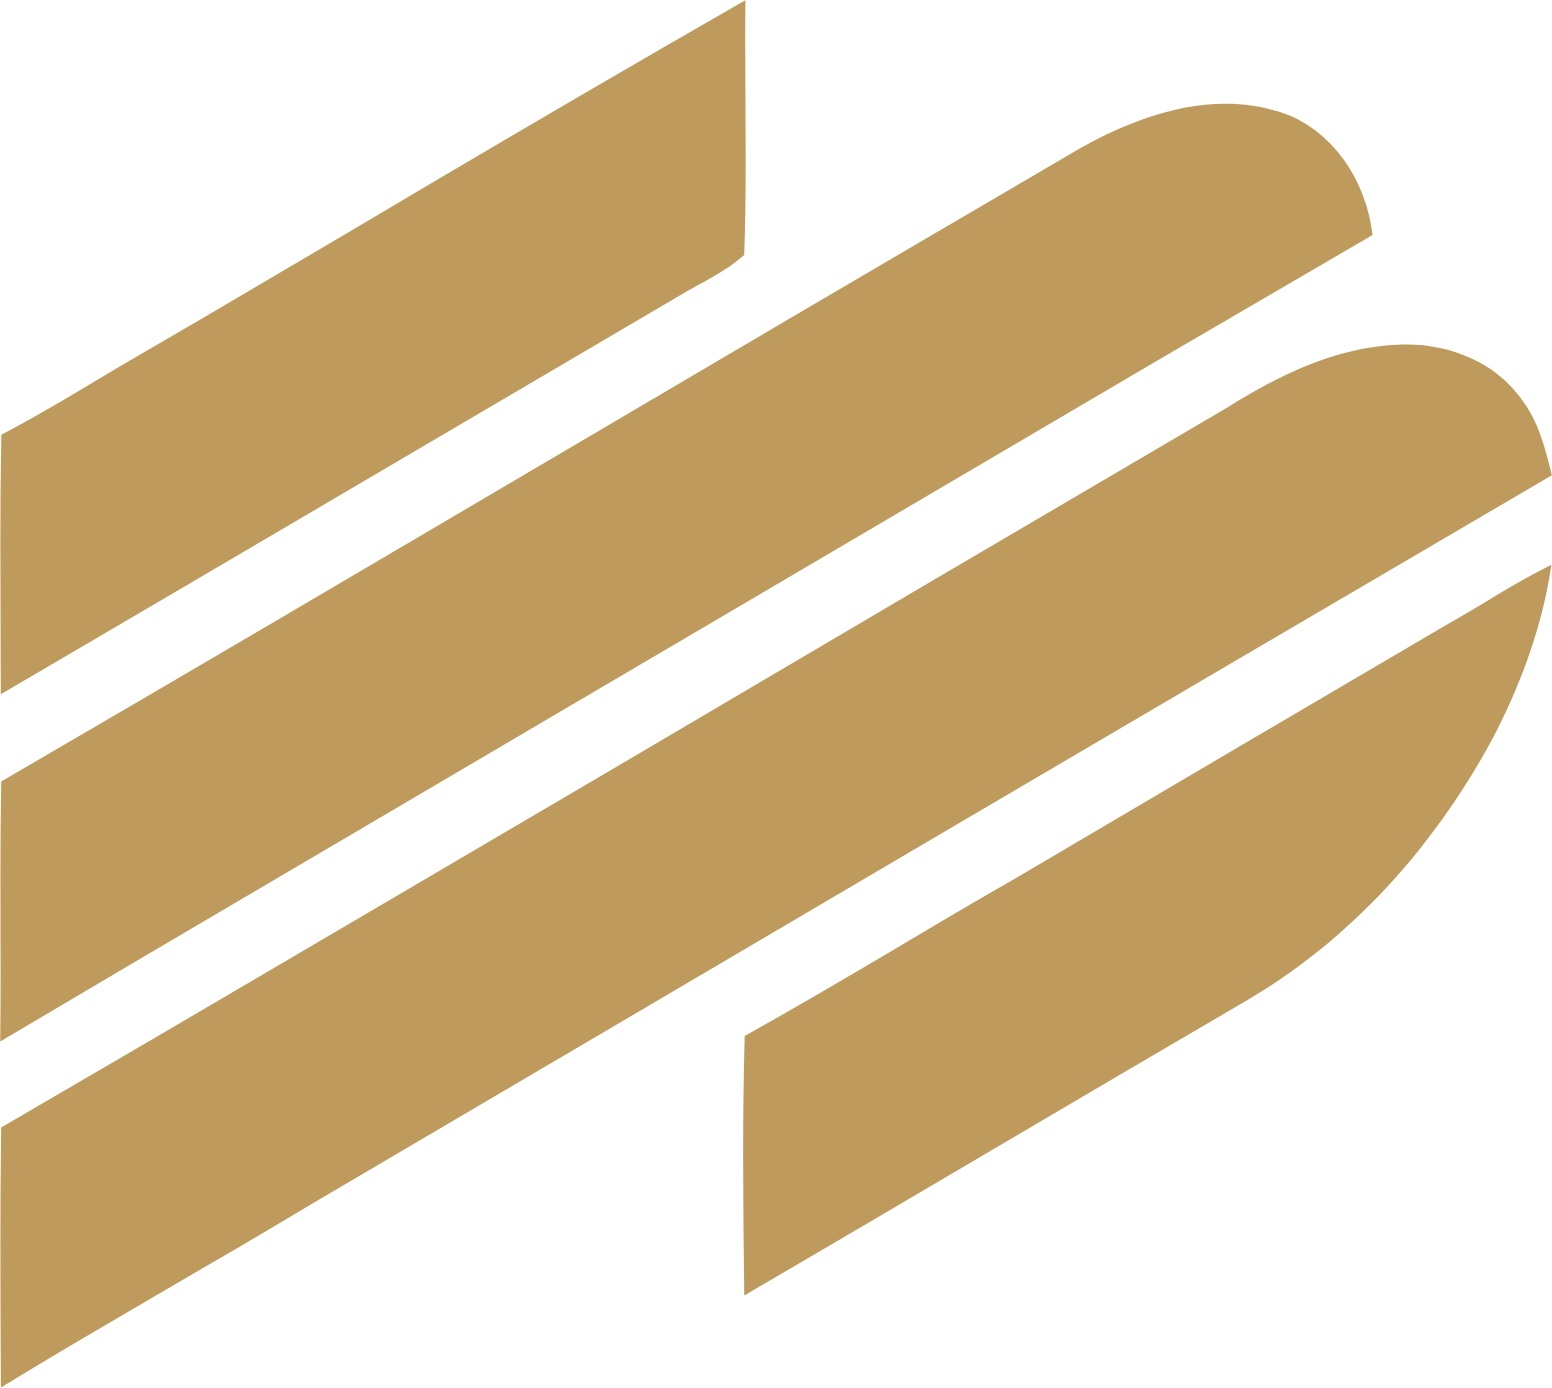 Enterprise Financial Services Corp logo (transparent PNG)